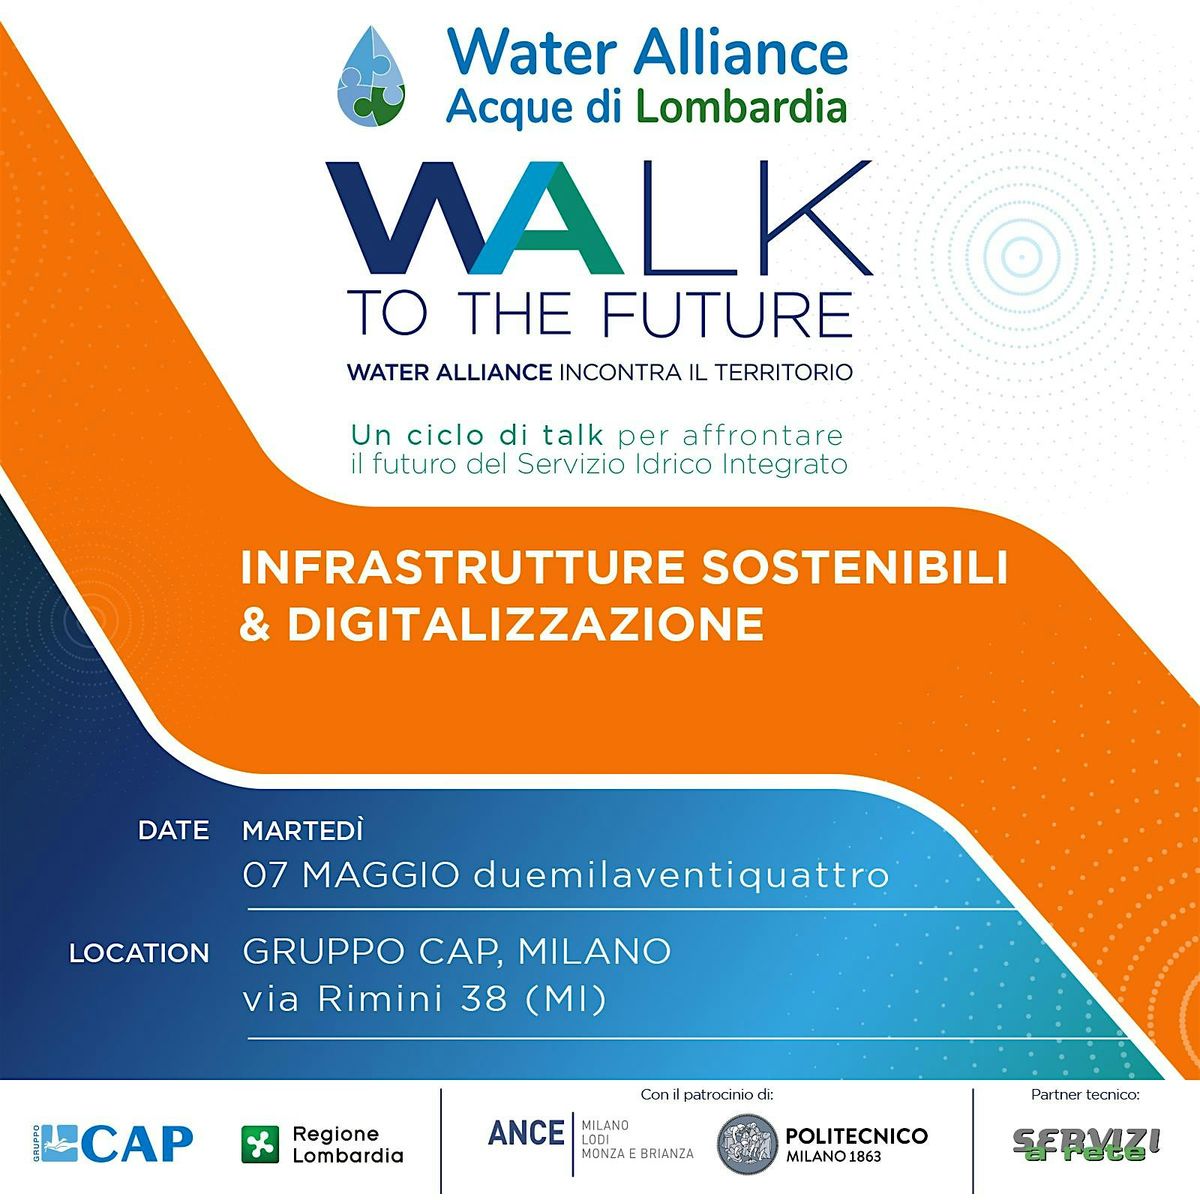 WALK TO THE FUTURE \u2013 Water Alliance incontra il territorio